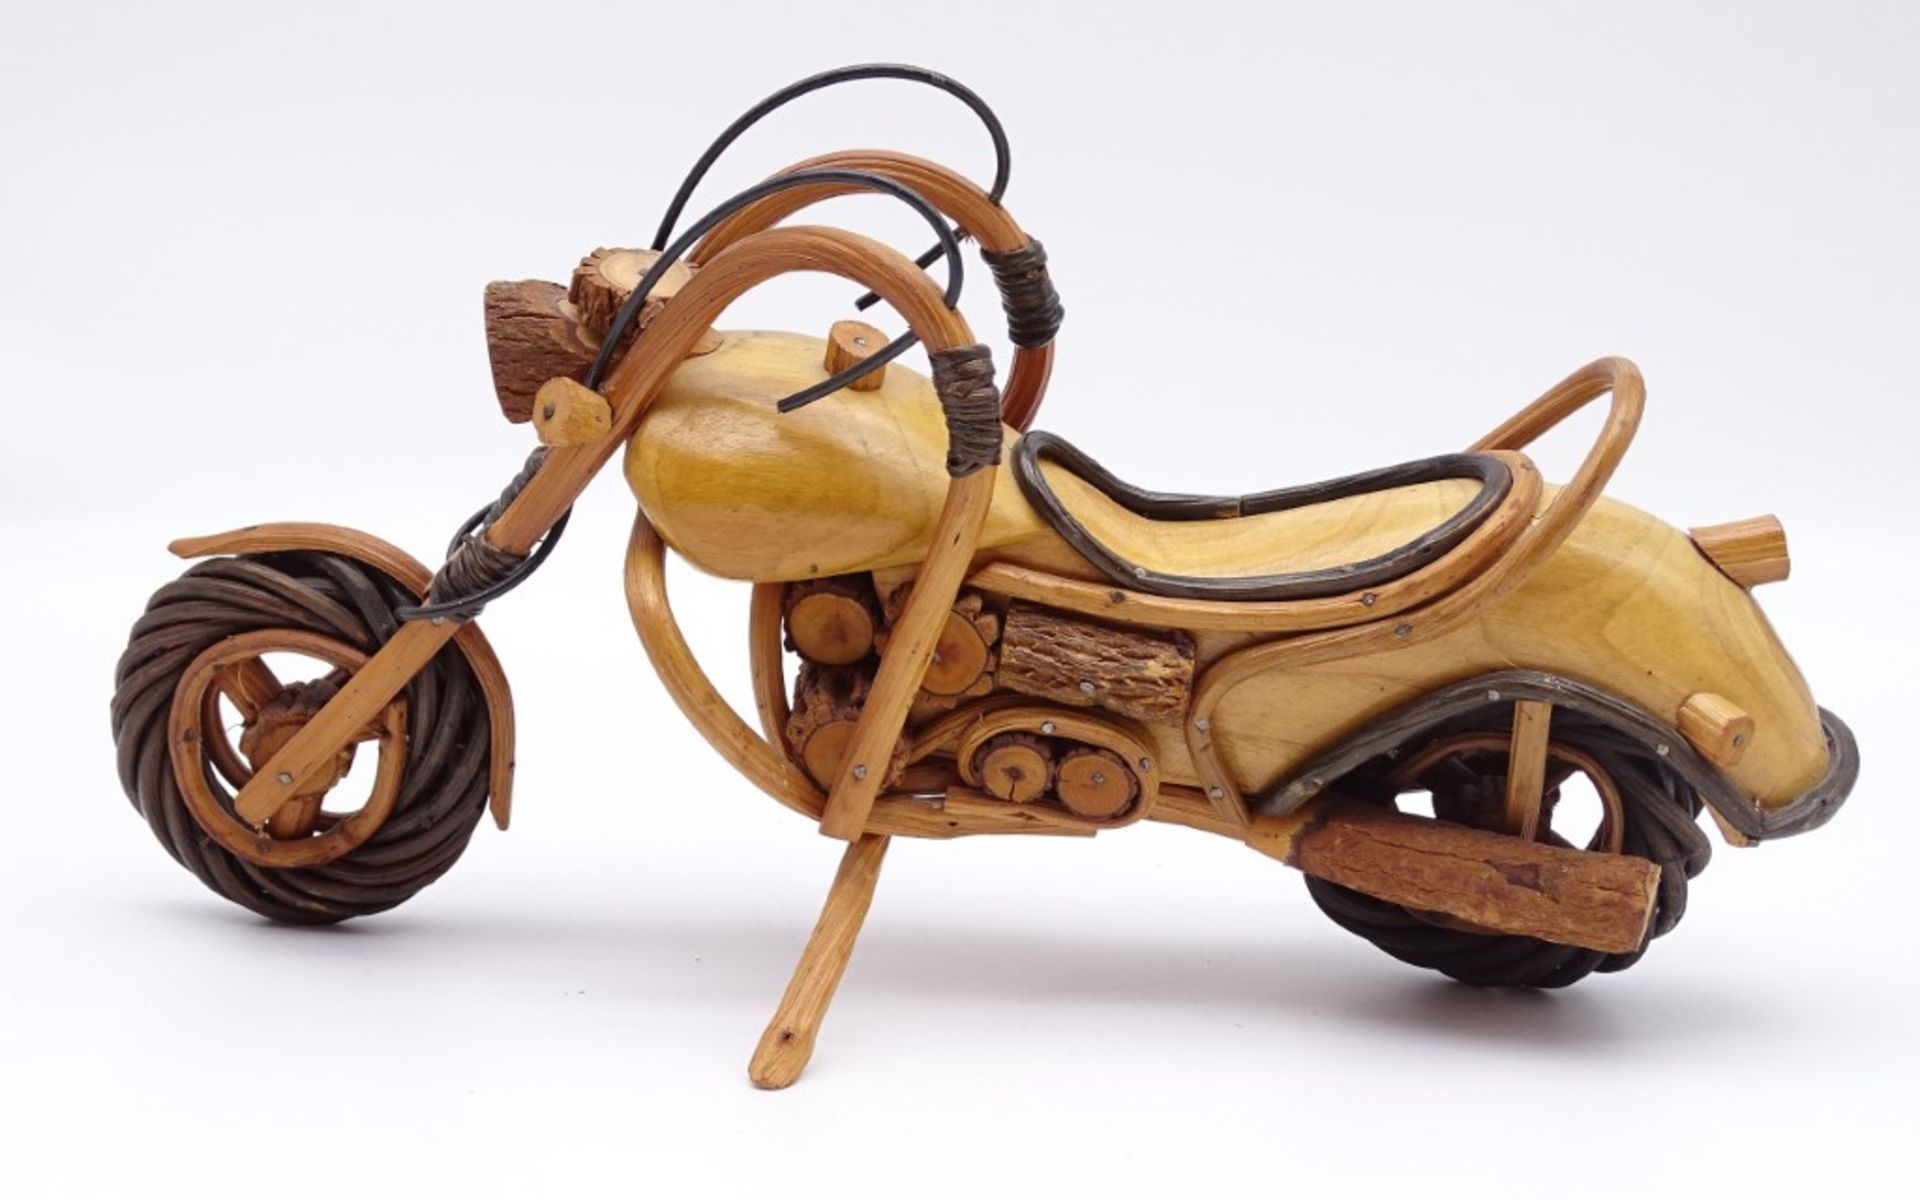 Motorradmodel aus Holz, ca. 34 x 17 cm, leicht reinigungsbedürftig